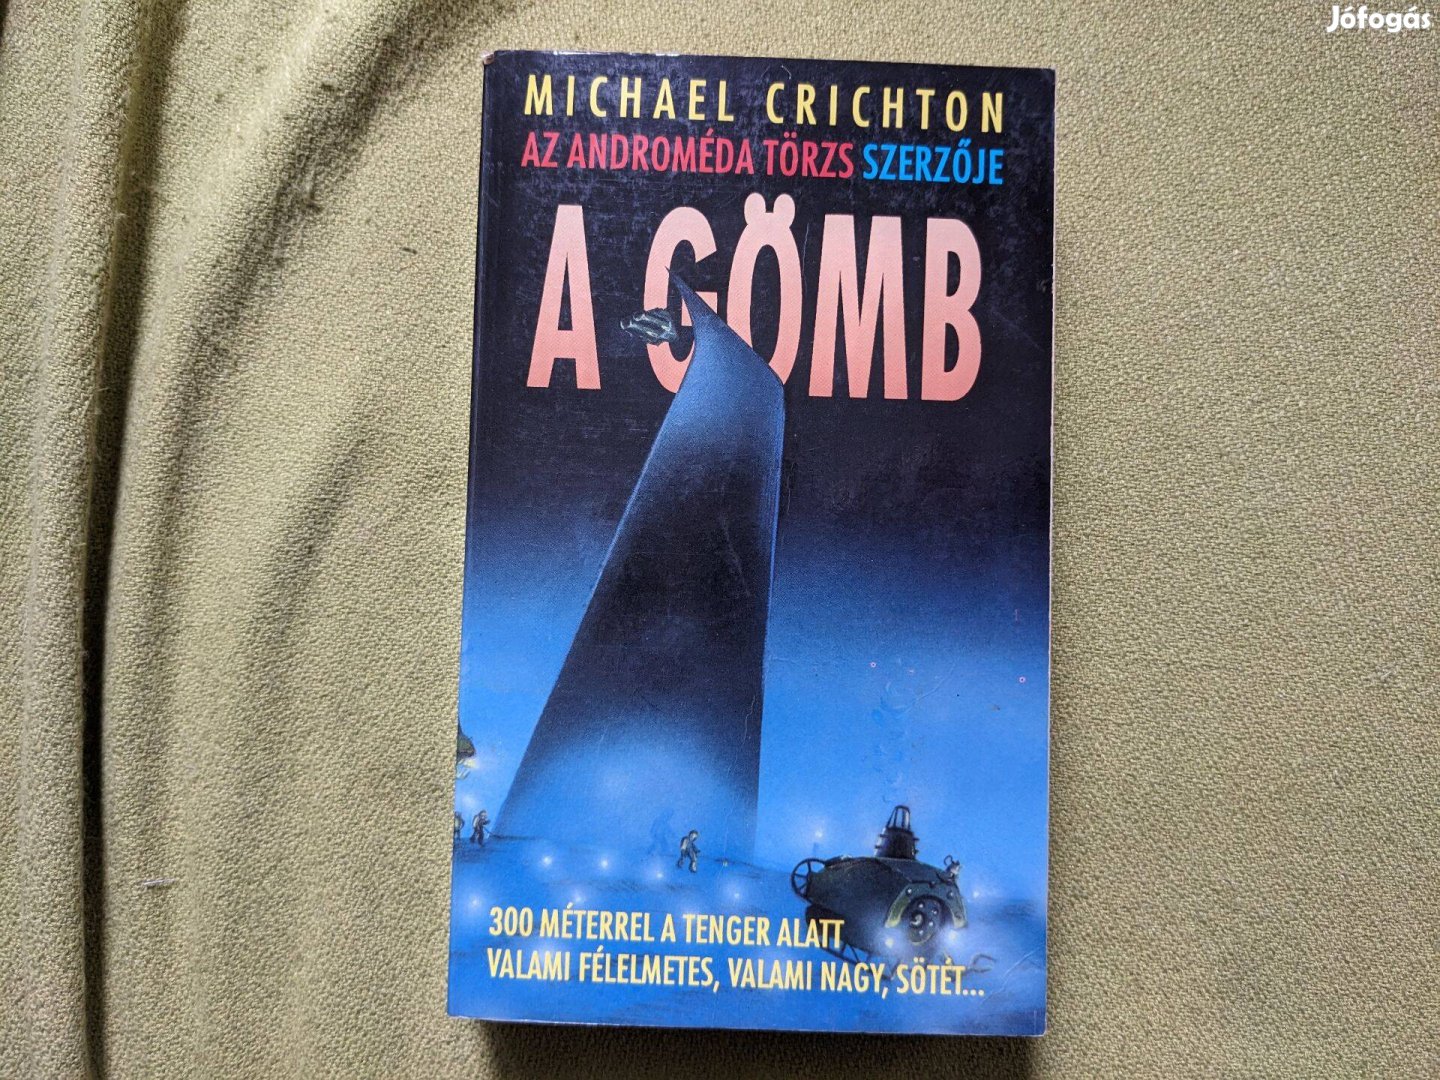 Michael Crichton: A gömb